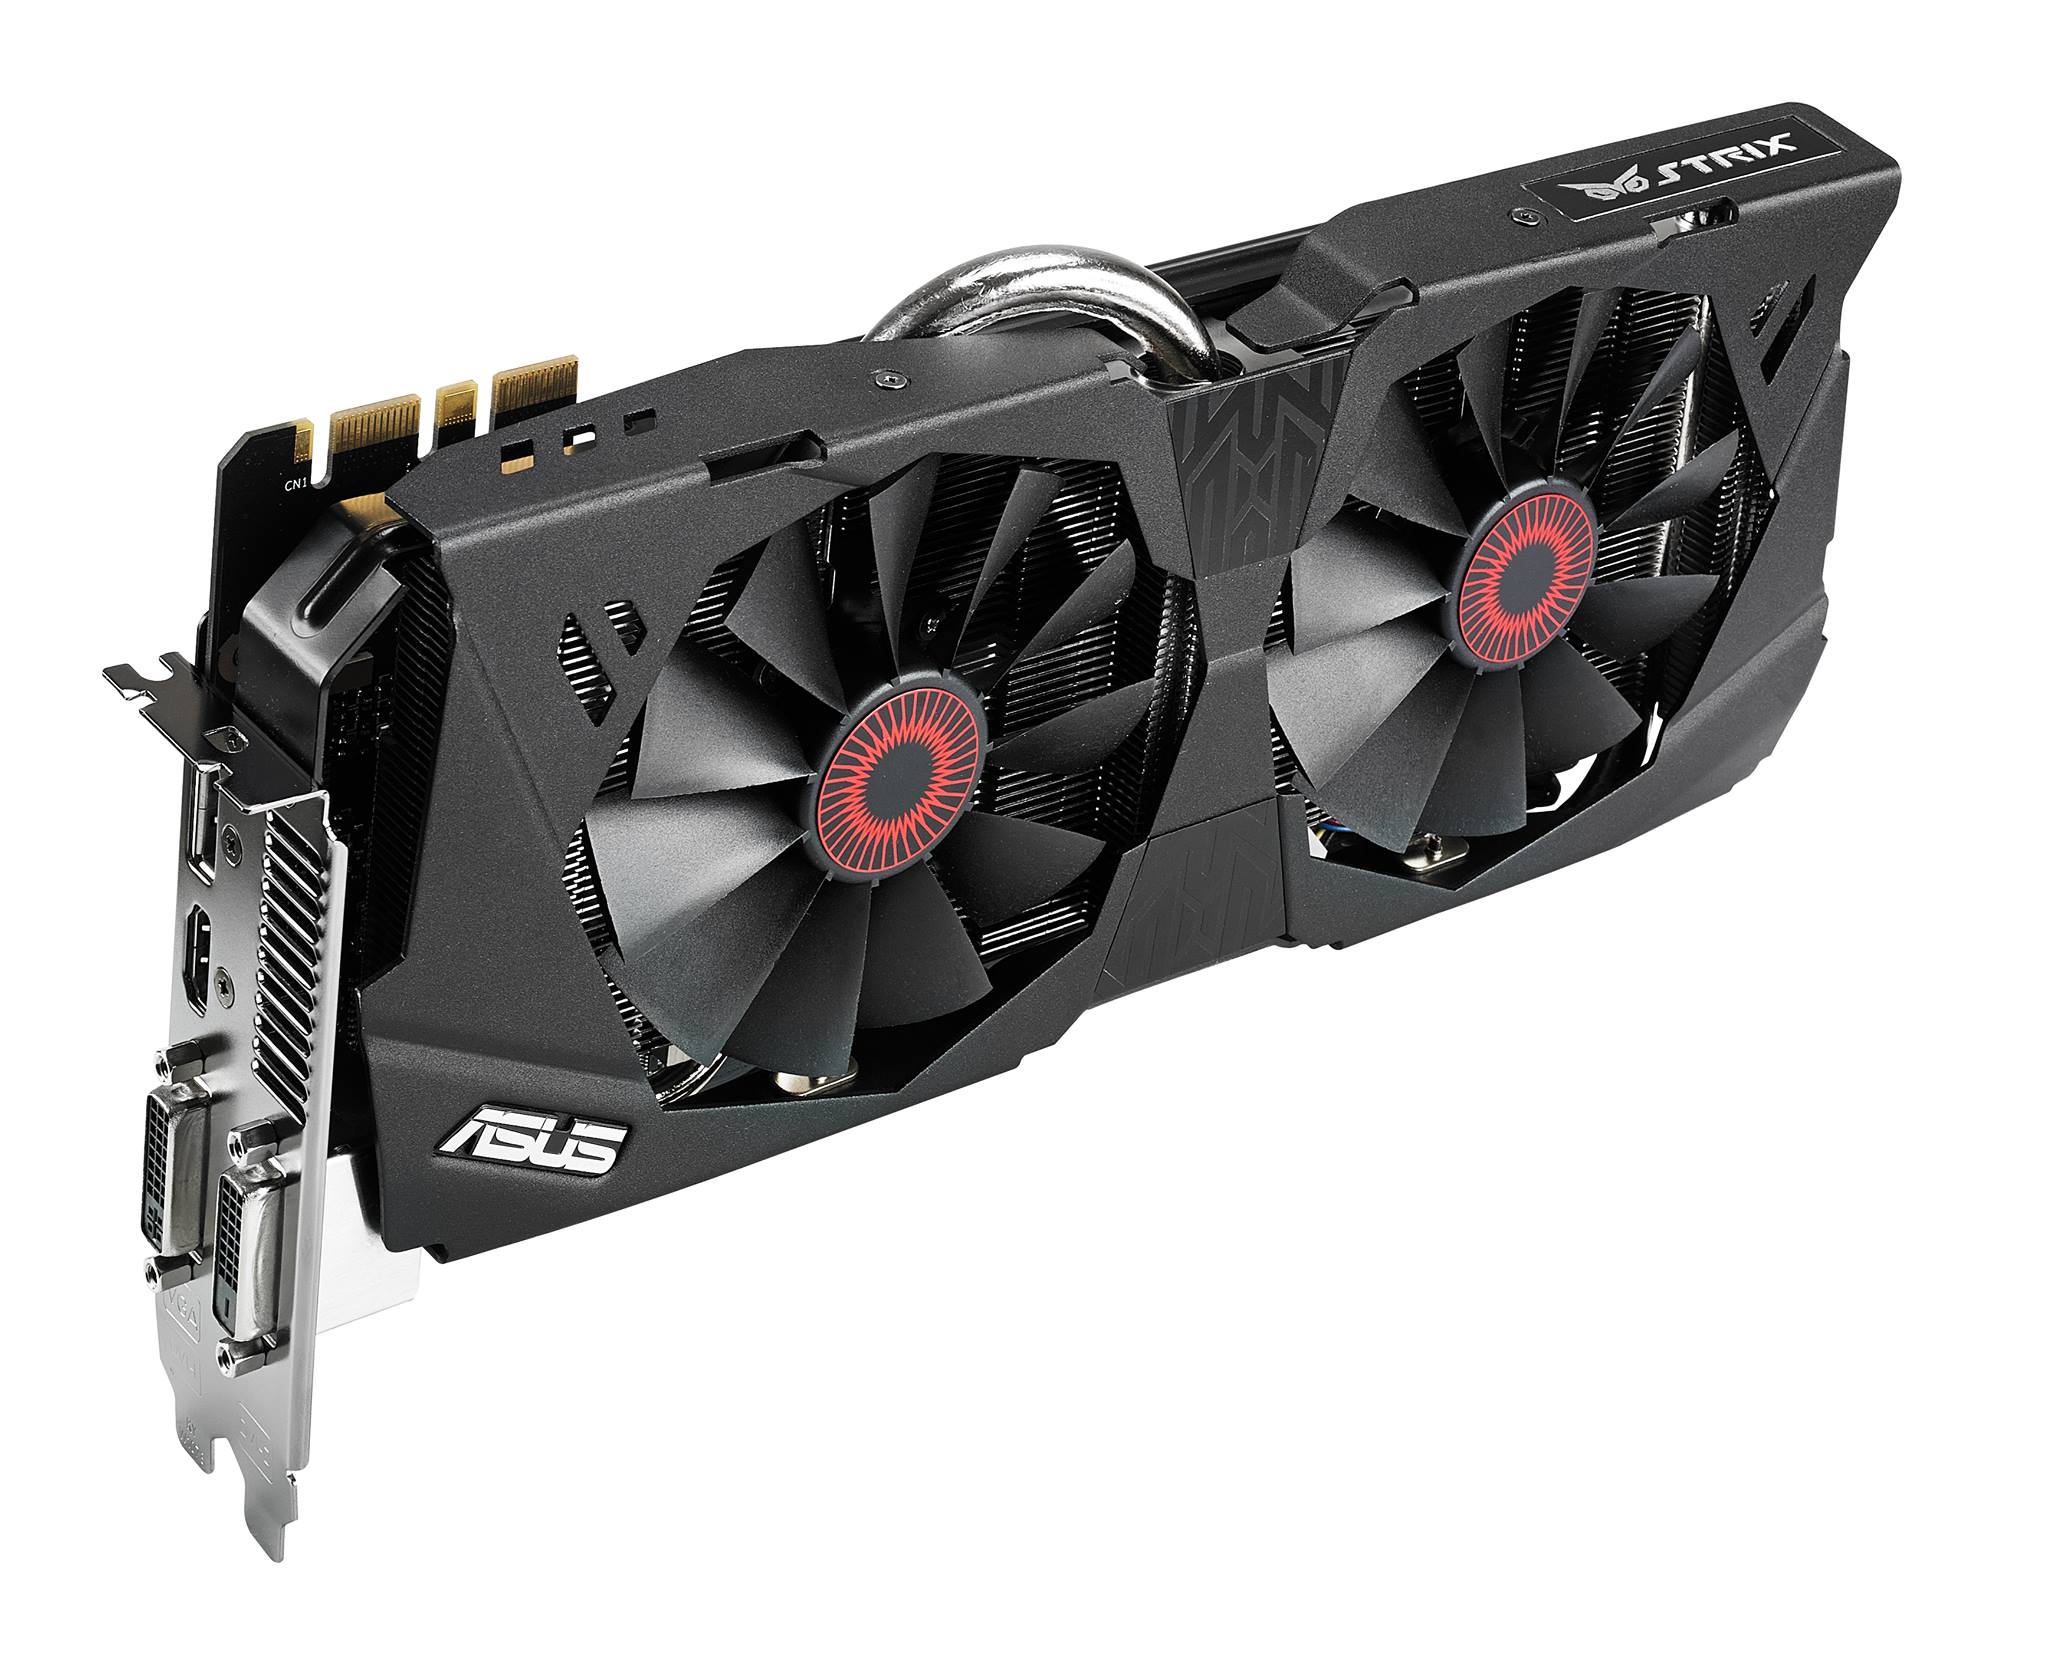 ASUS announces GeForce GTX 780 6GB 